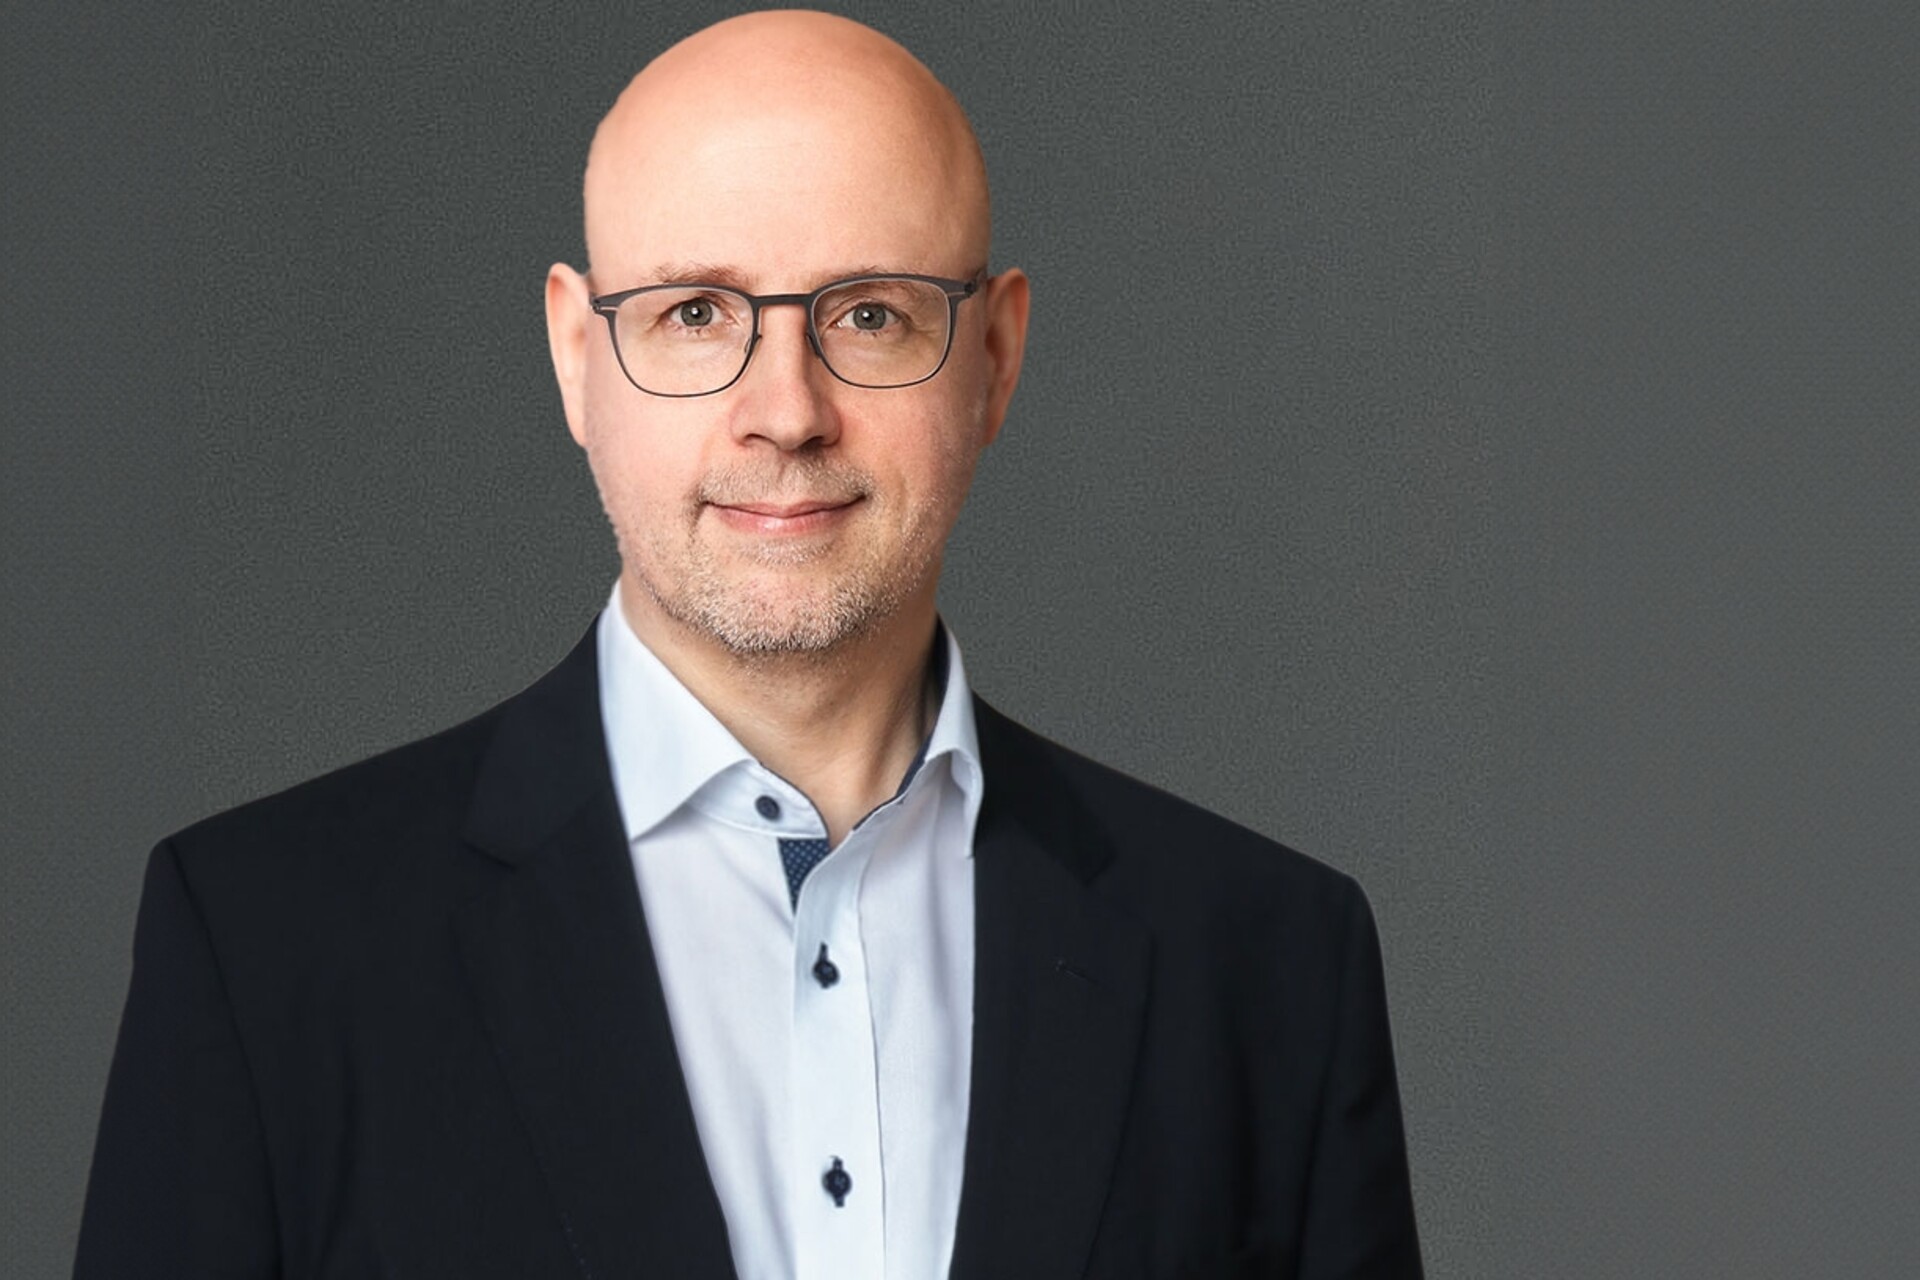 IA: Gerdas Niehage'as yra „Swisscom“ vyriausiasis techninis pareigūnas (CTO).